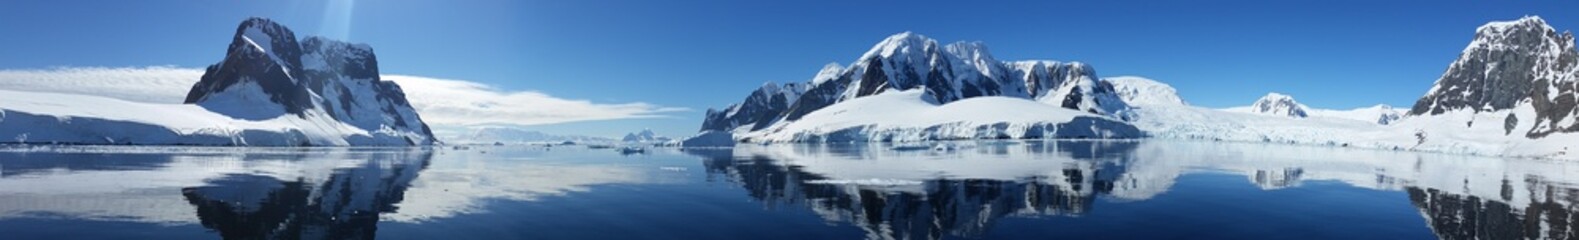 Fototapeta na wymiar zdjęcie panoramiczne wybrzeża antarktydy w zimny piękny słoneczny dzień